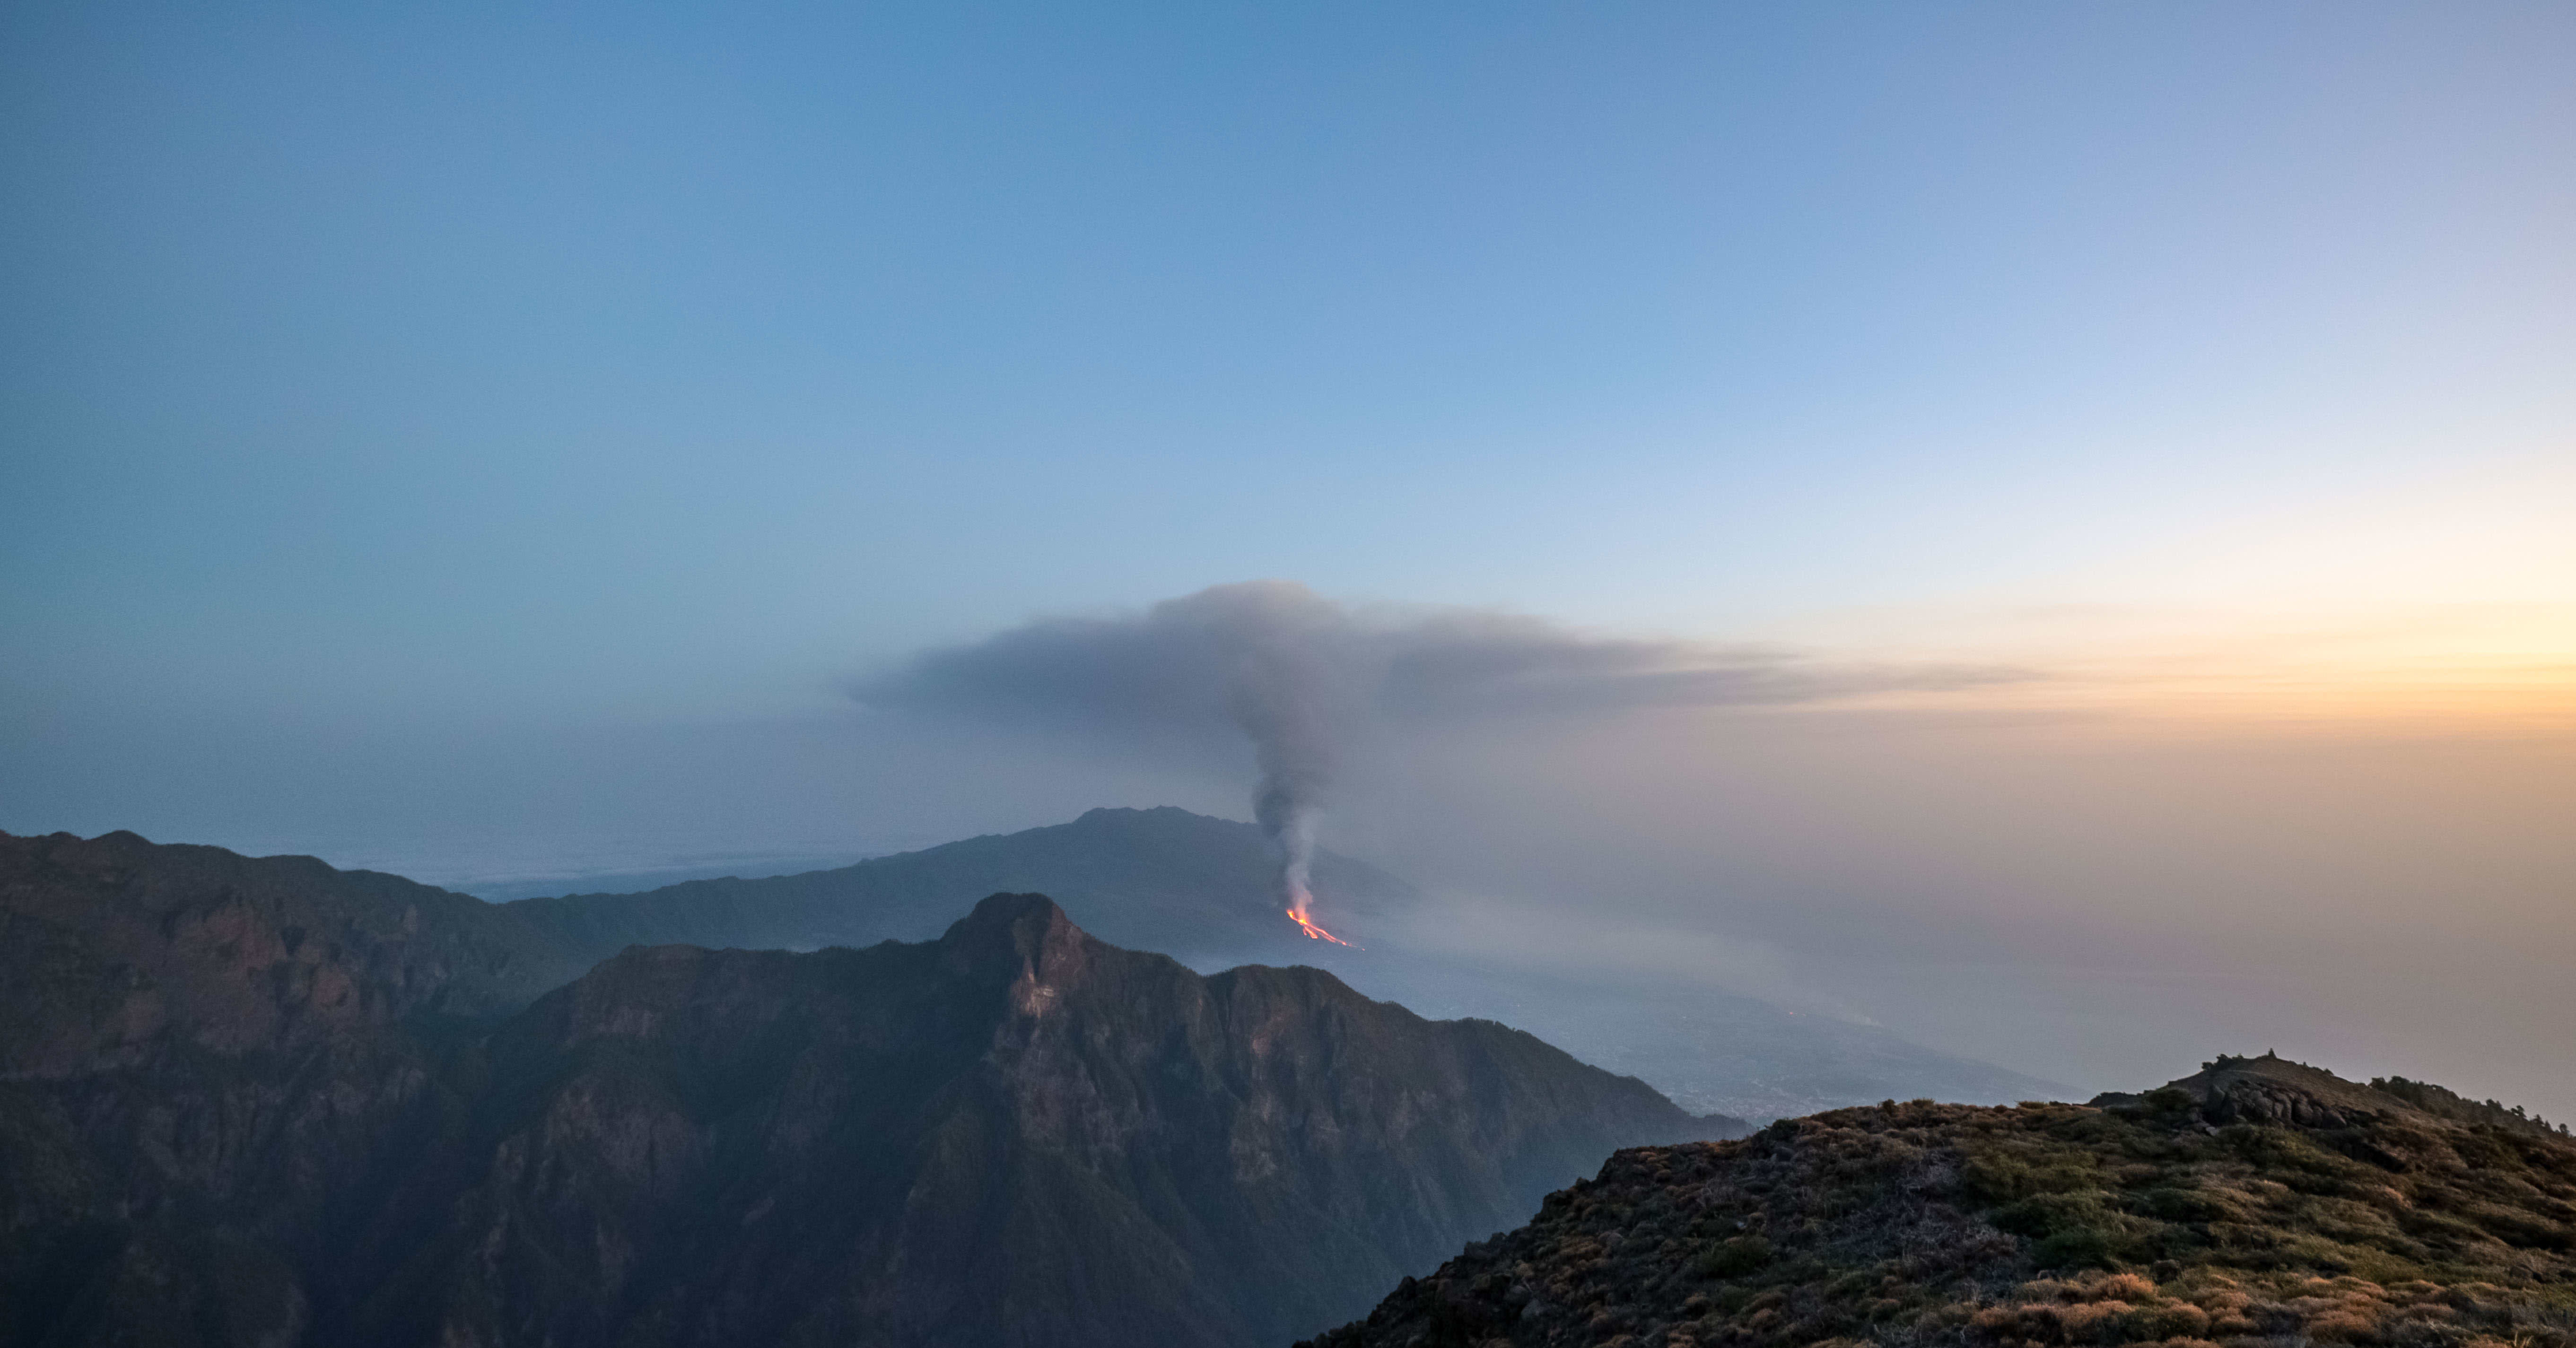 ”Viime viikolla oli voimakkaita järistyksiä ja usein” – Joonas Viuho seuraa lähietäisyydeltä viidettä viikkoa jatkuvaa tulivuorenpurkausta La Palman saarella